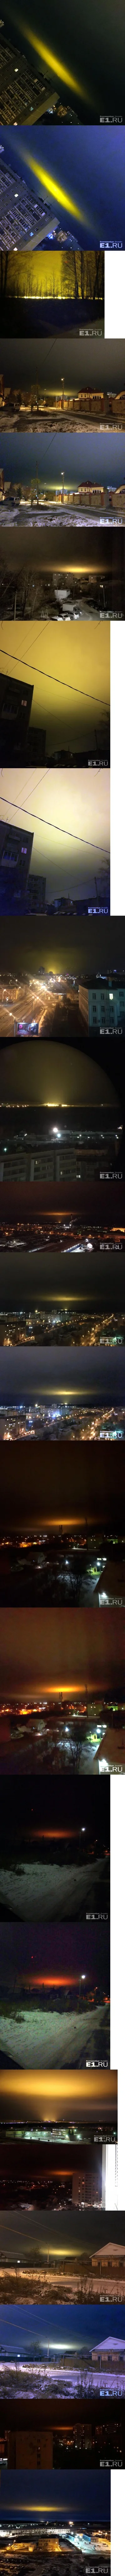 l-da - #niebo #rosja #ciekawostki #obserwacjeastronomiczne